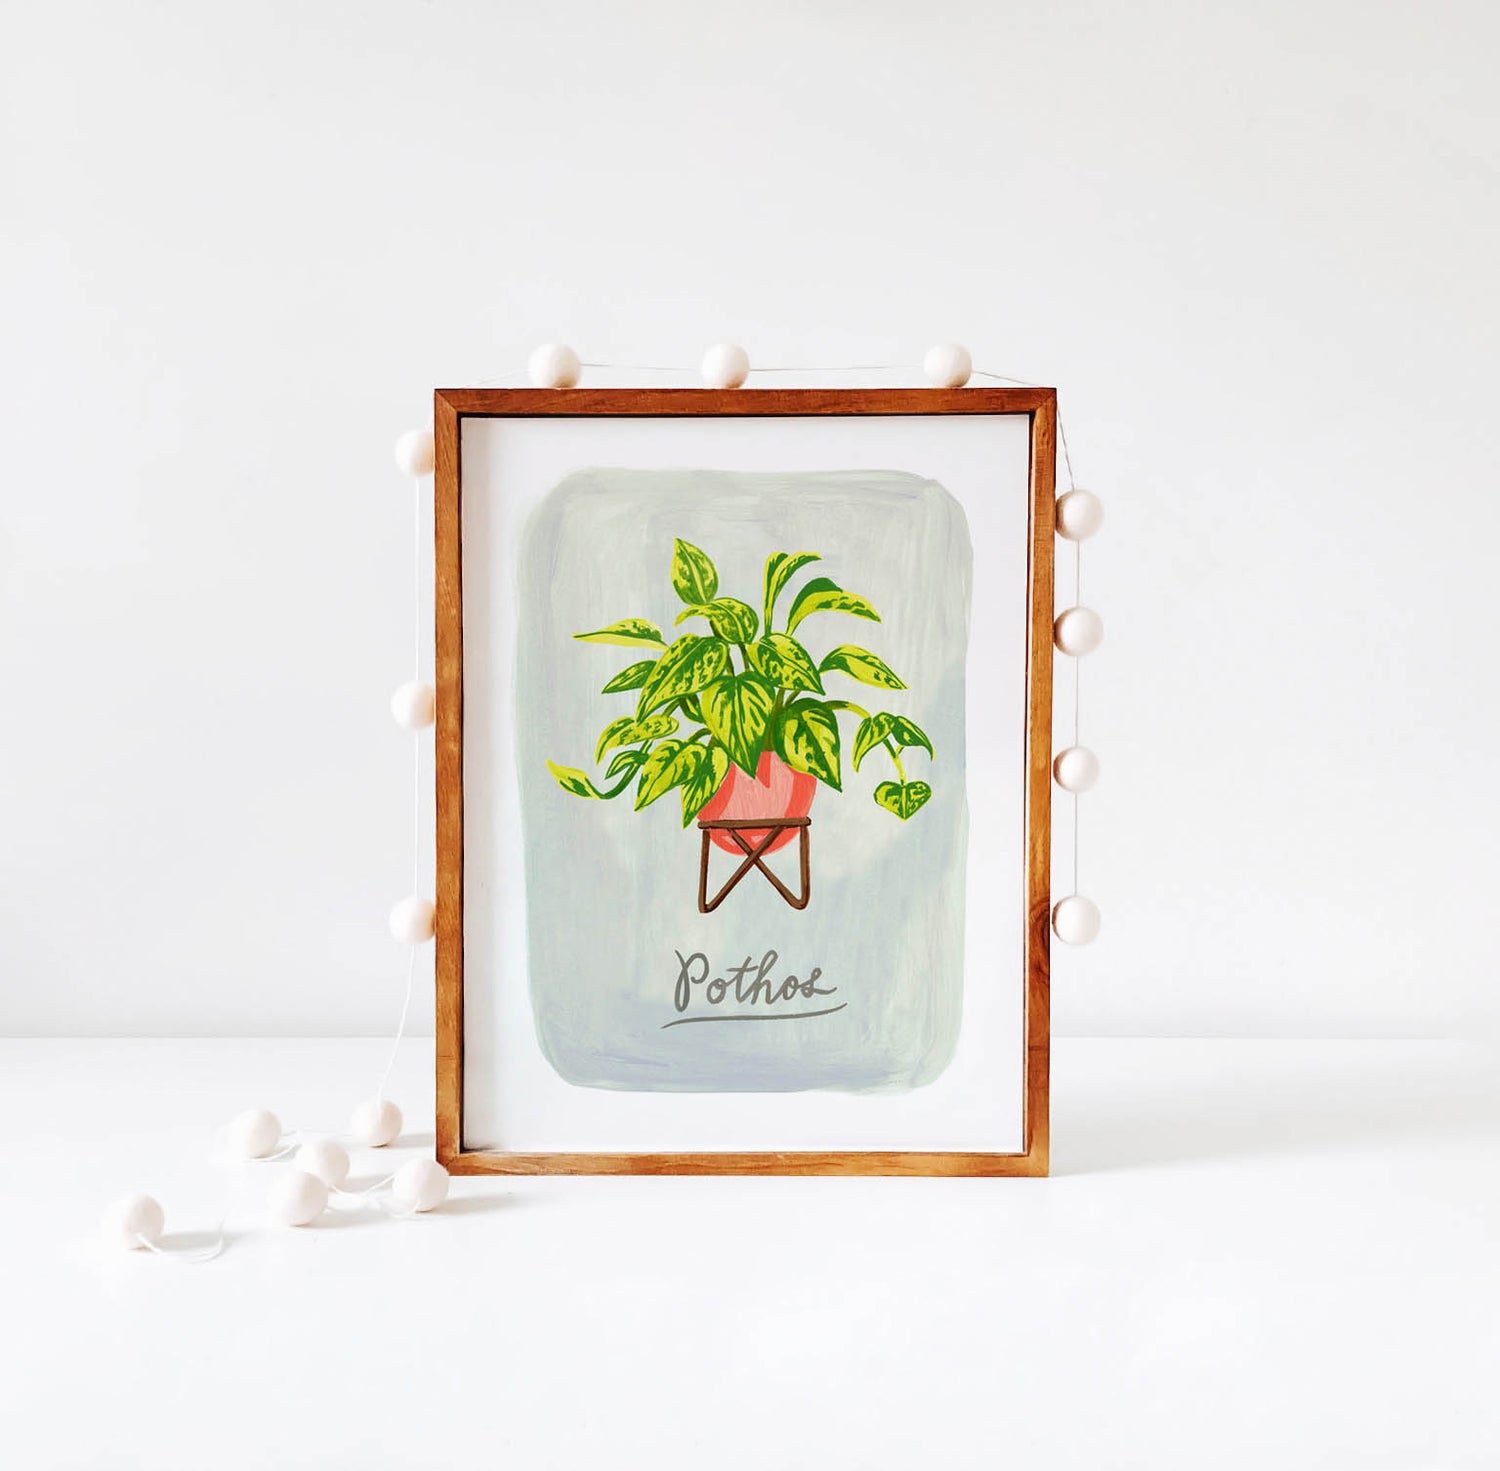 Pothos plant illustration in wood frame